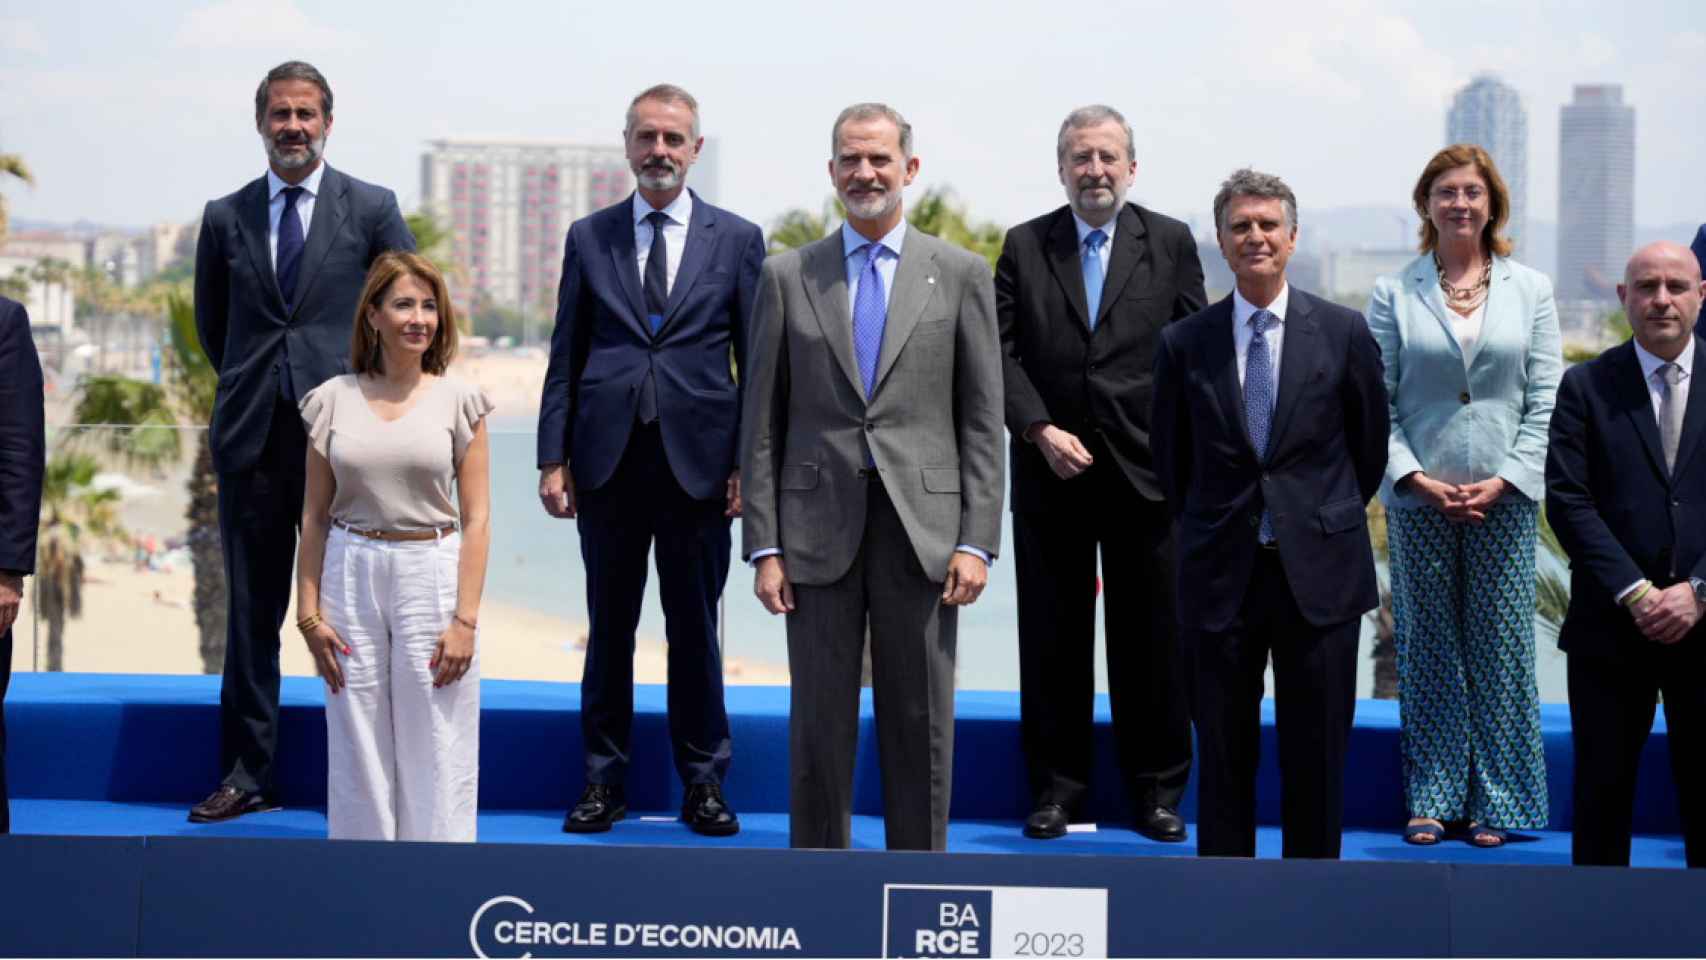 El rey Felipe VI en la reunión del Círculo de Economía en Barcelona / CG